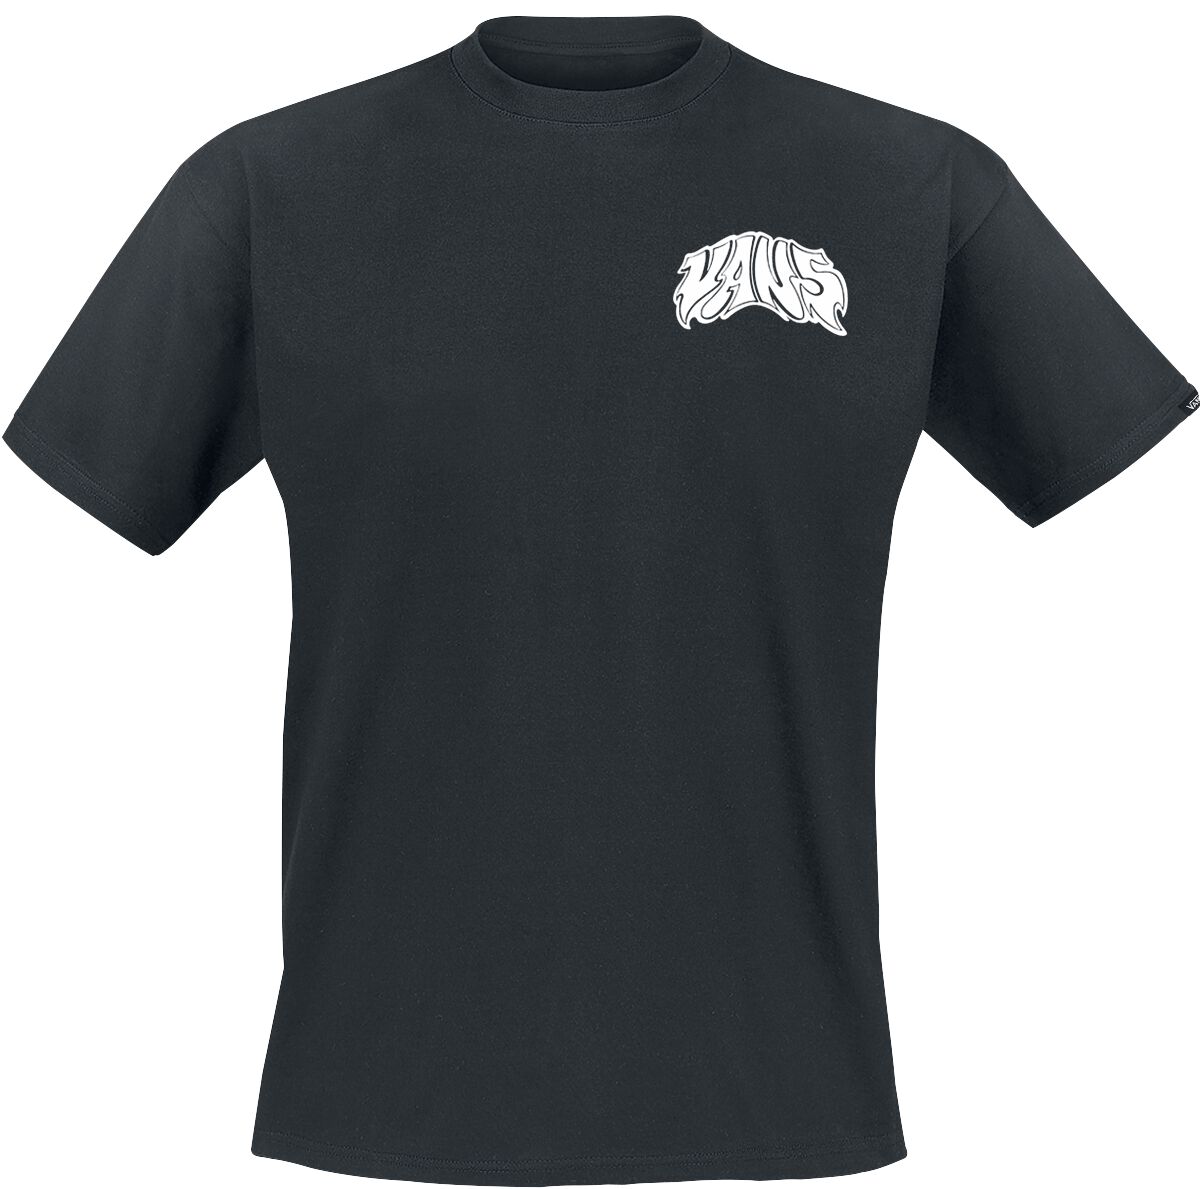 Vans T-Shirt - Prowler Tee - S bis XXL - für Männer - Größe XL - schwarz